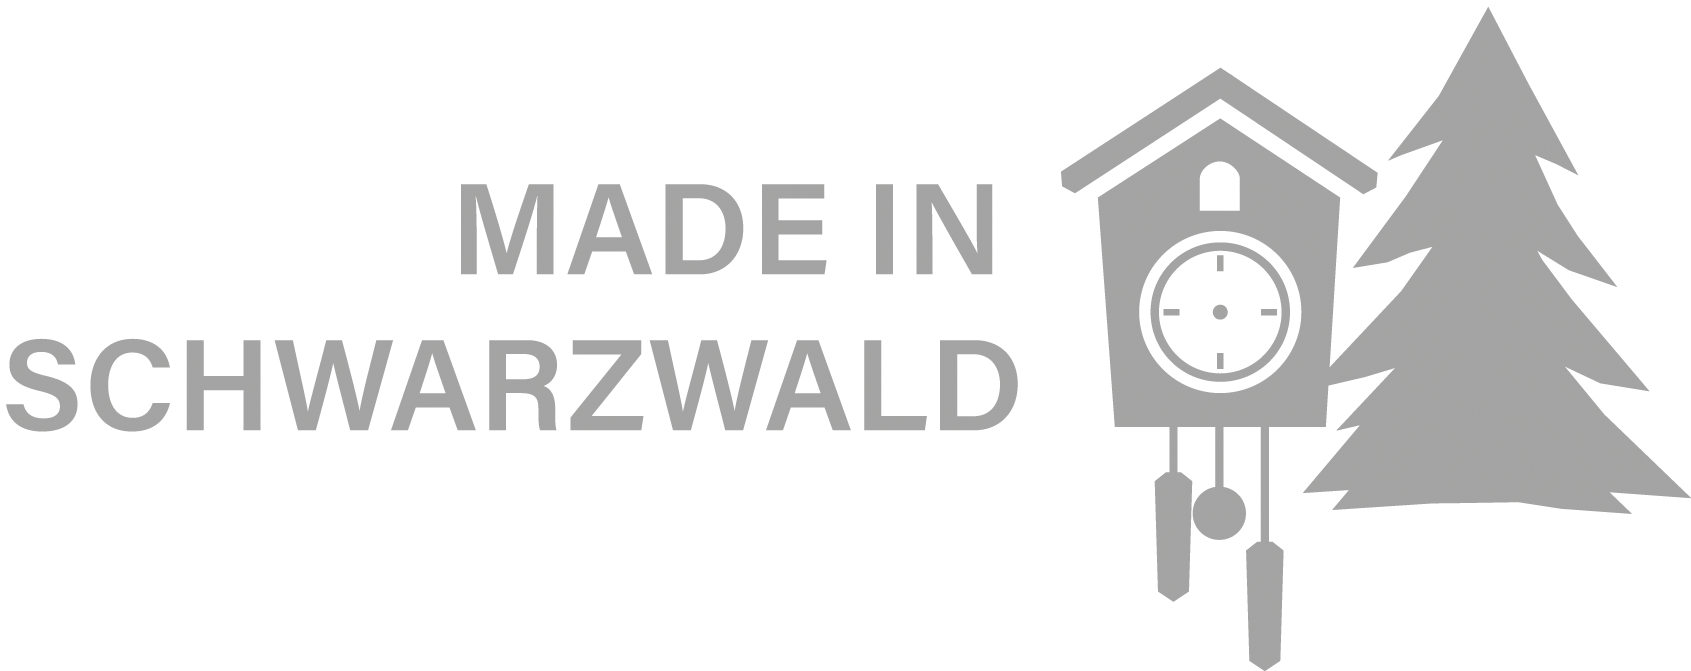 schrempp edv - Software made in Schwarzwald